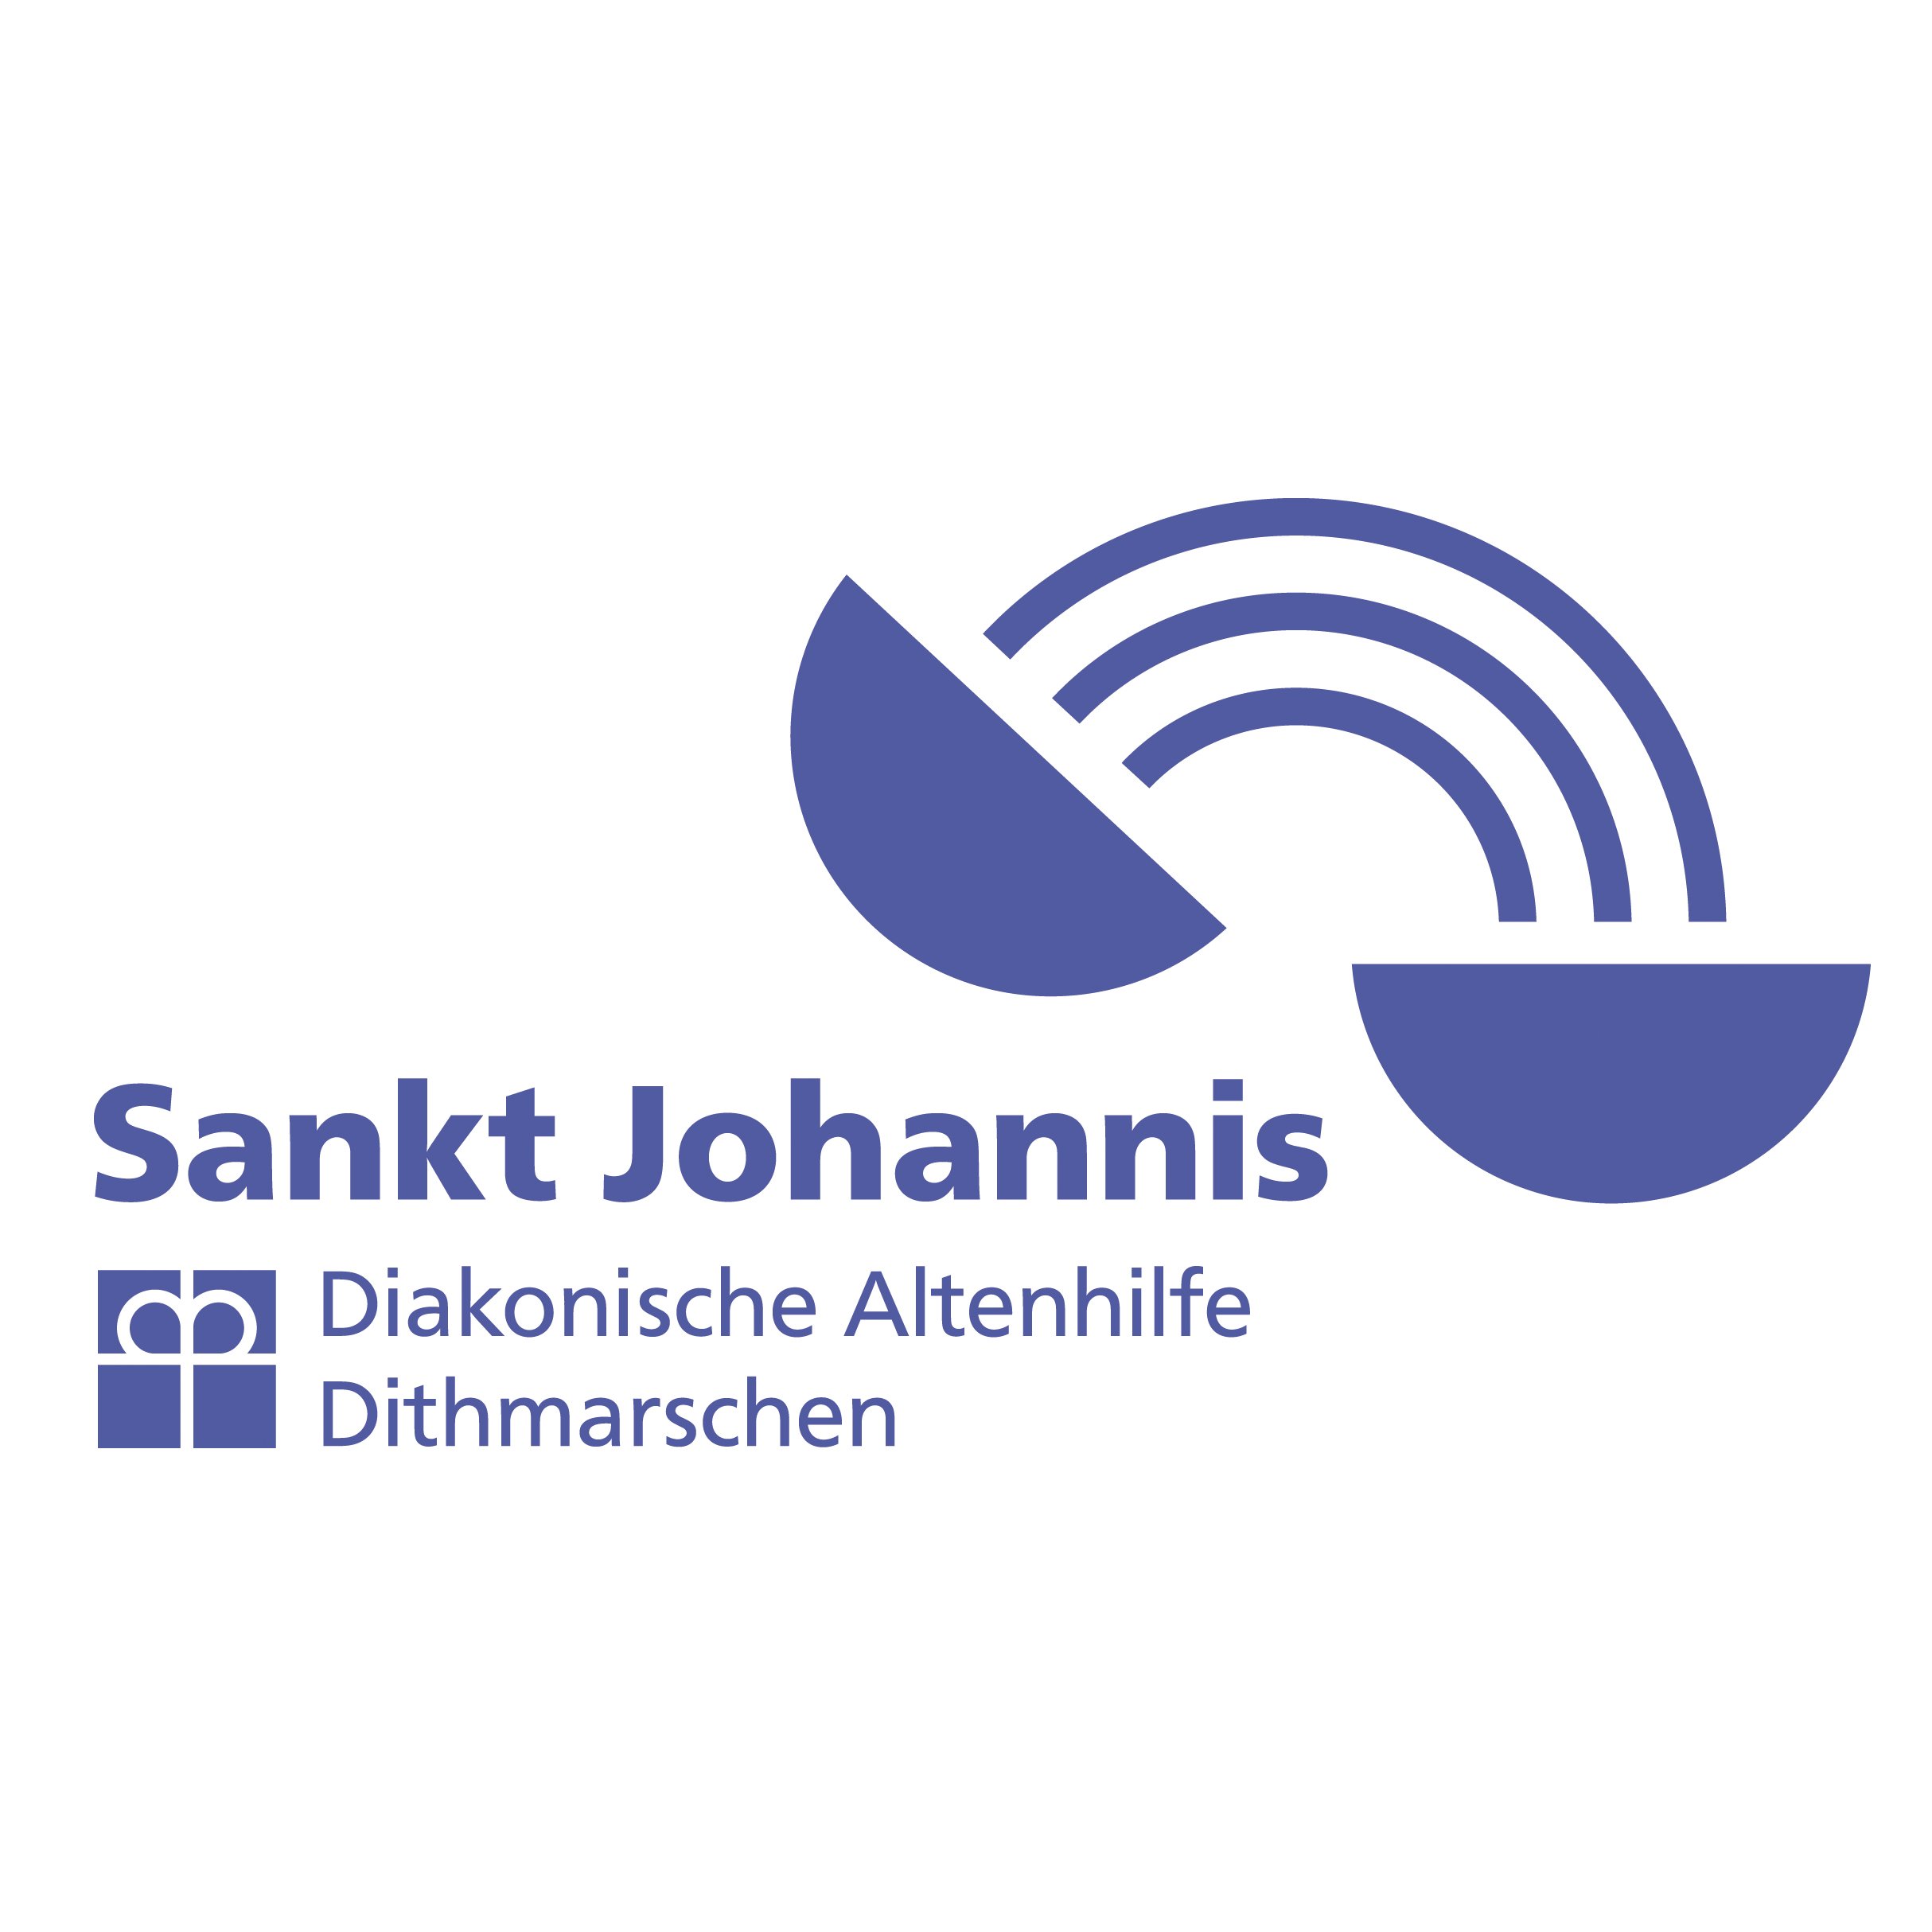 St. Johannis Diakonische Altenhilfe Dithmarschen gGmbH in Heide in Holstein - Logo